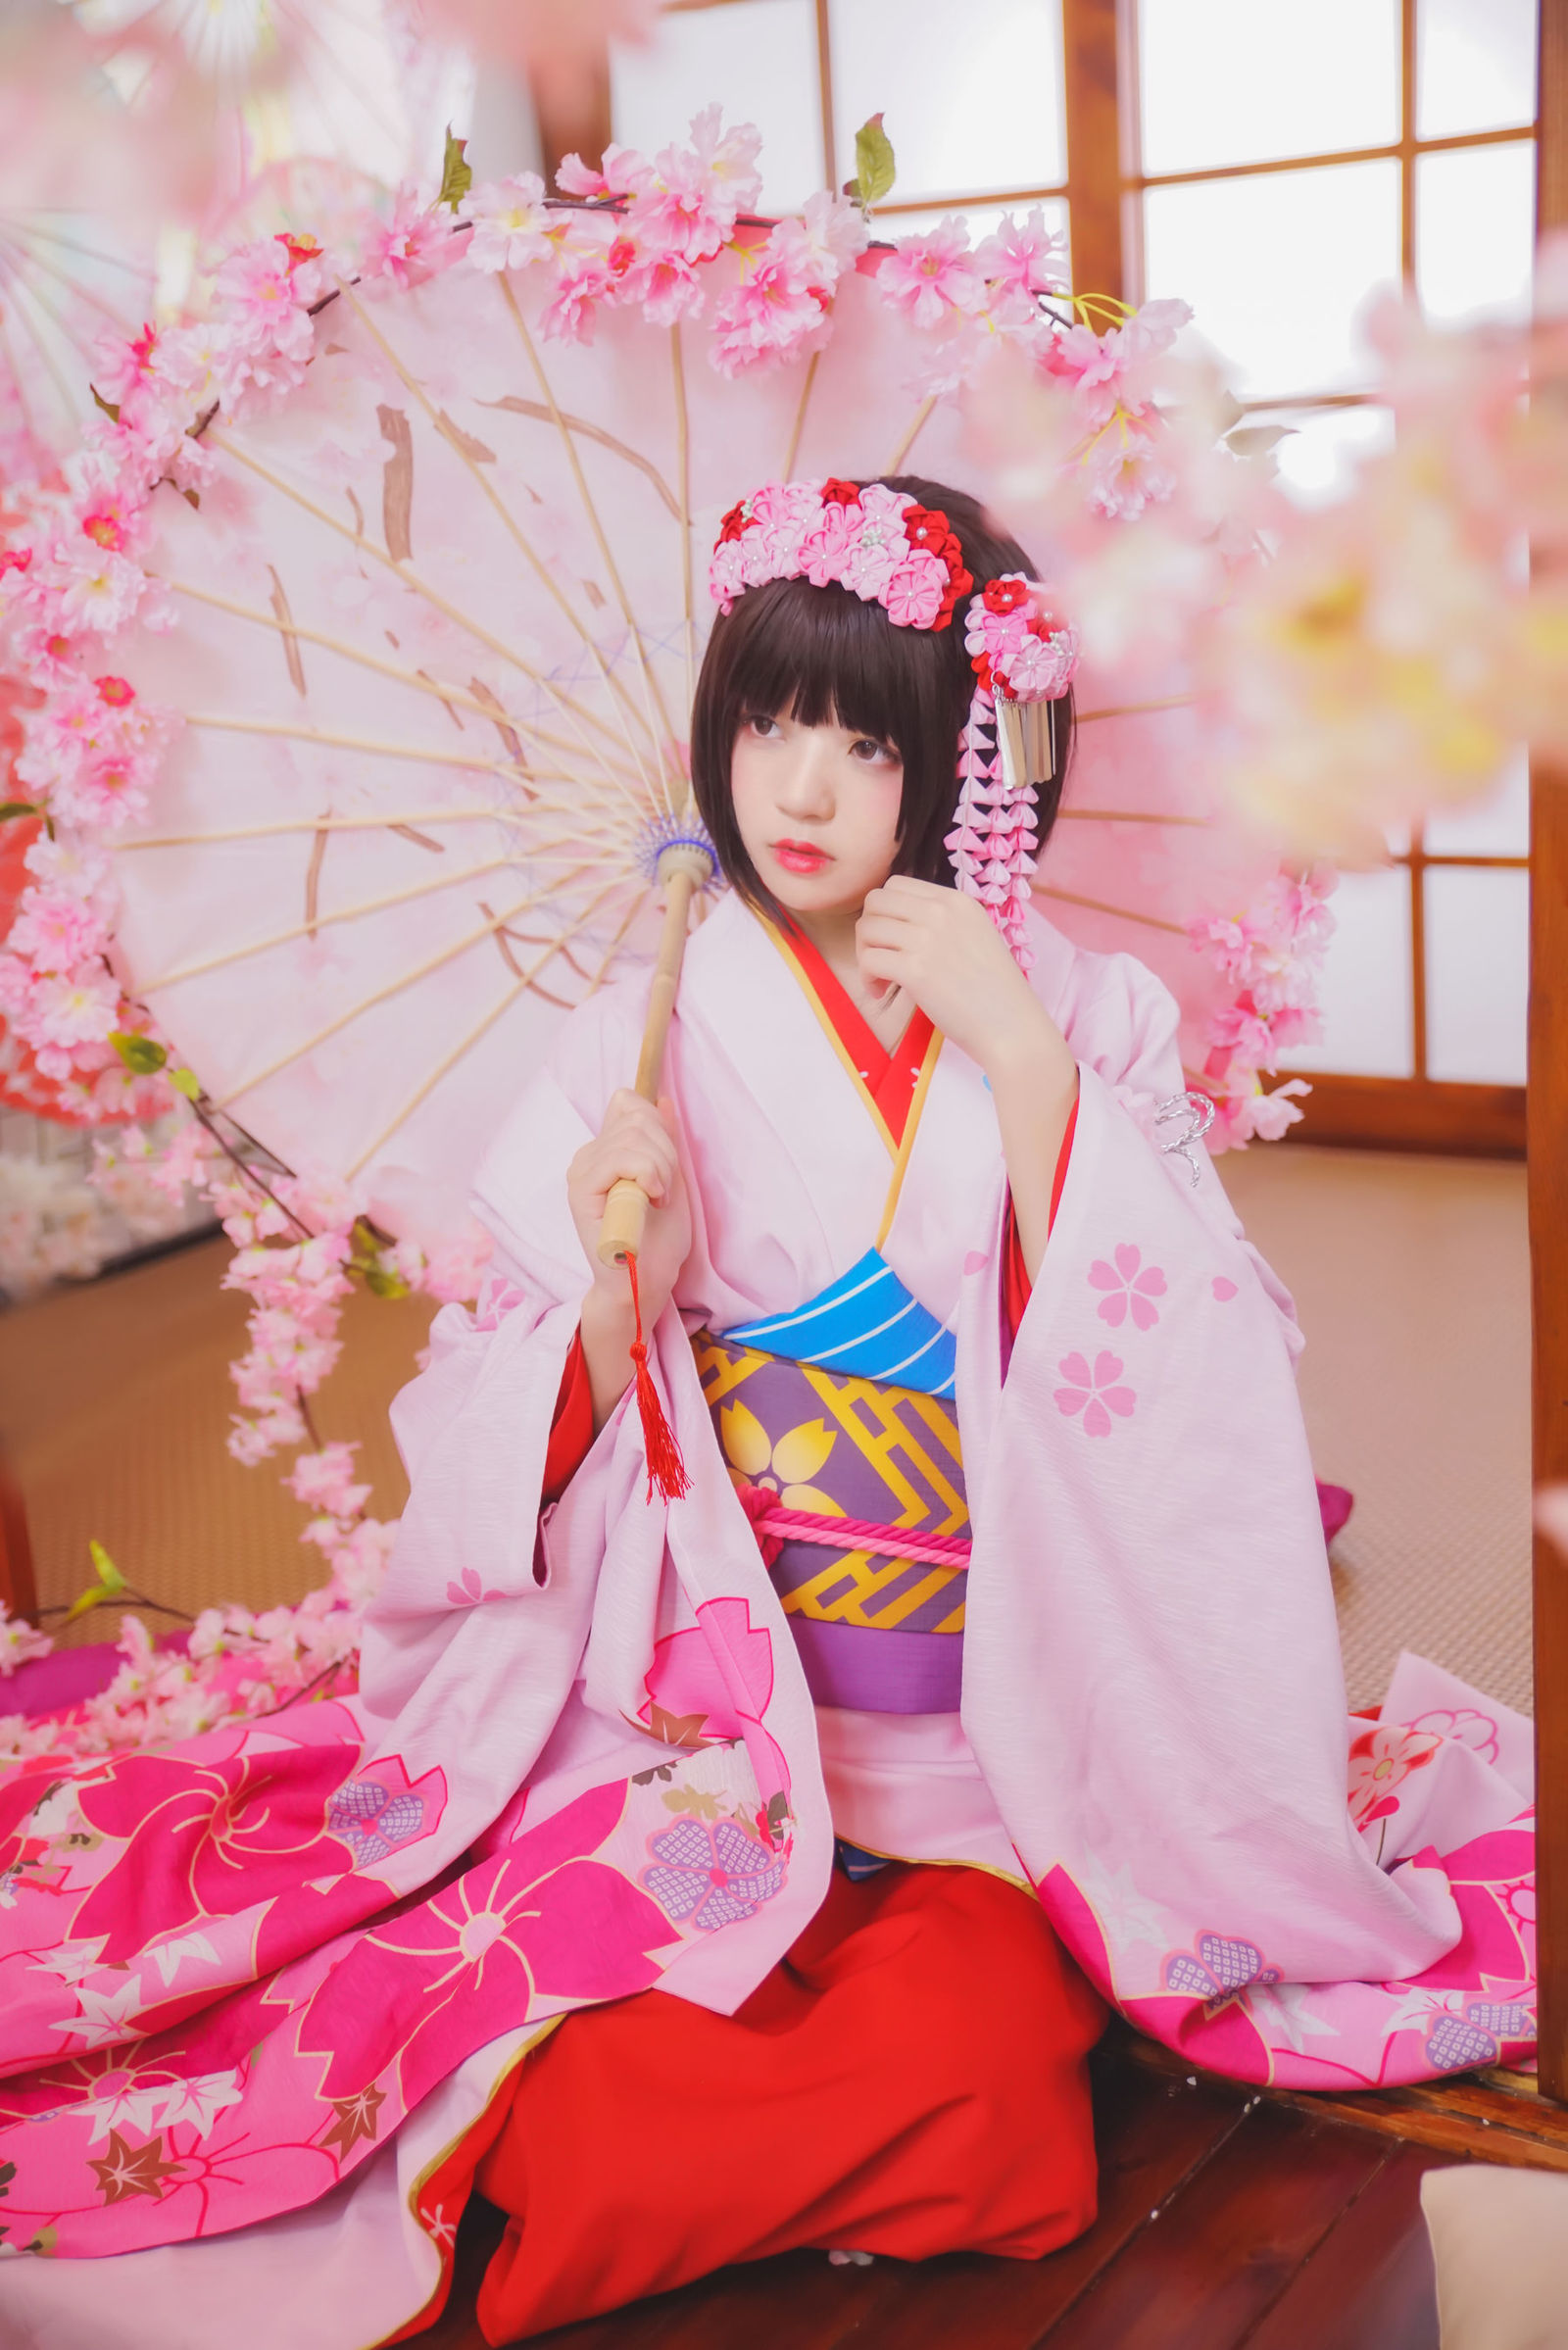 日本少女经典和服唯美下面脱的一光二净图片